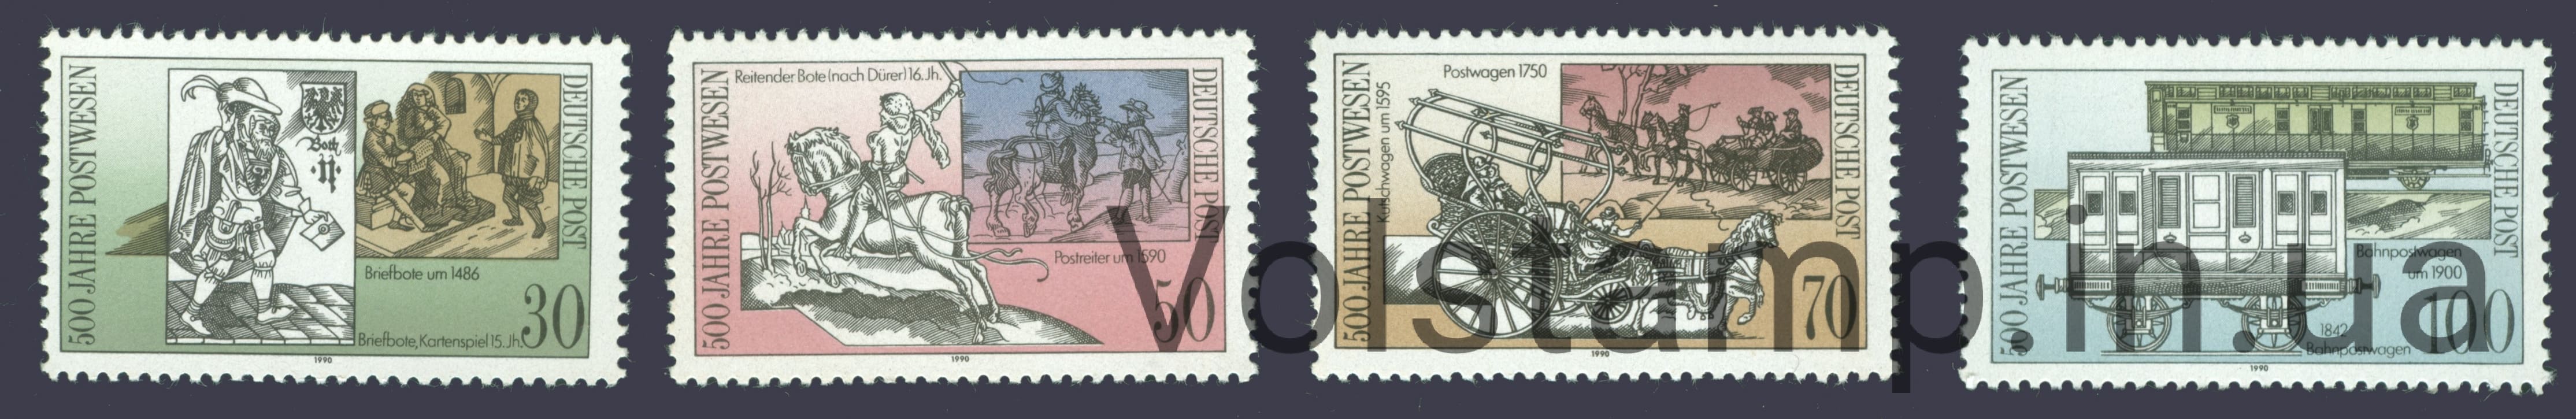 1990 ГДР Серия марок (500 лет международной почтовой службе в Европе, поезд) MNH №3354-3357